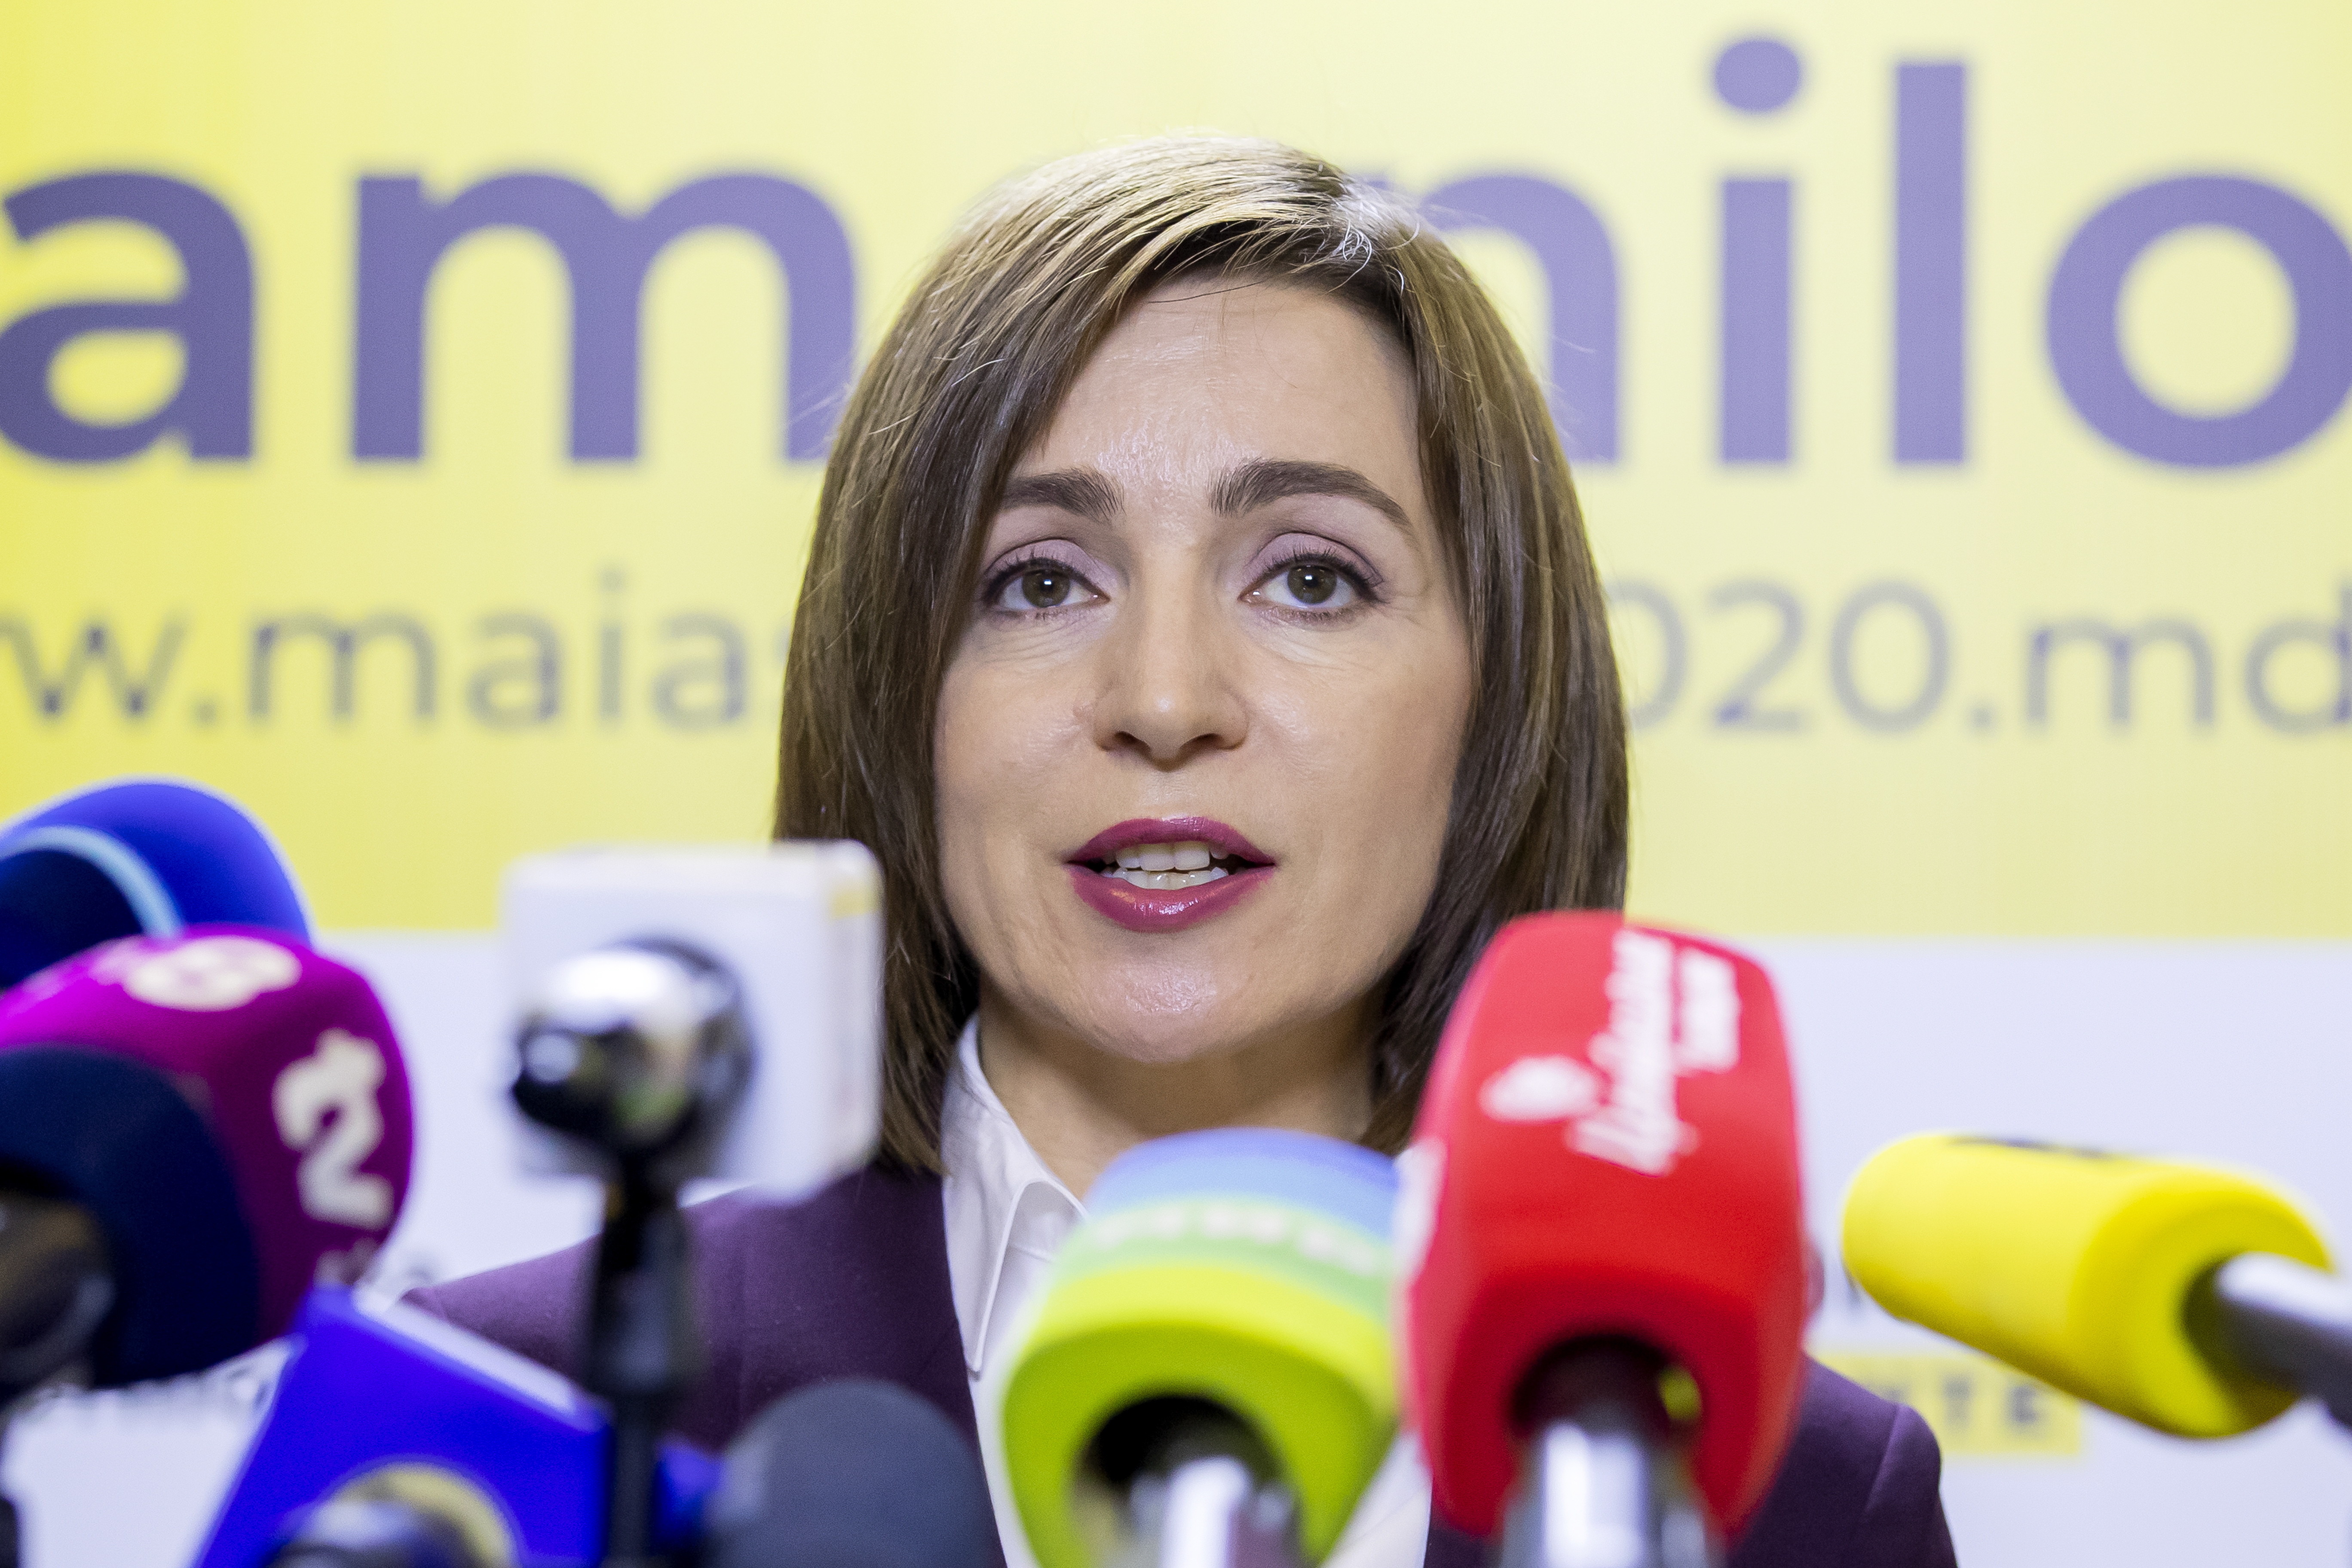 Maia Sandu a fost învestită în funcţia de preşedinte al Republicii Moldova